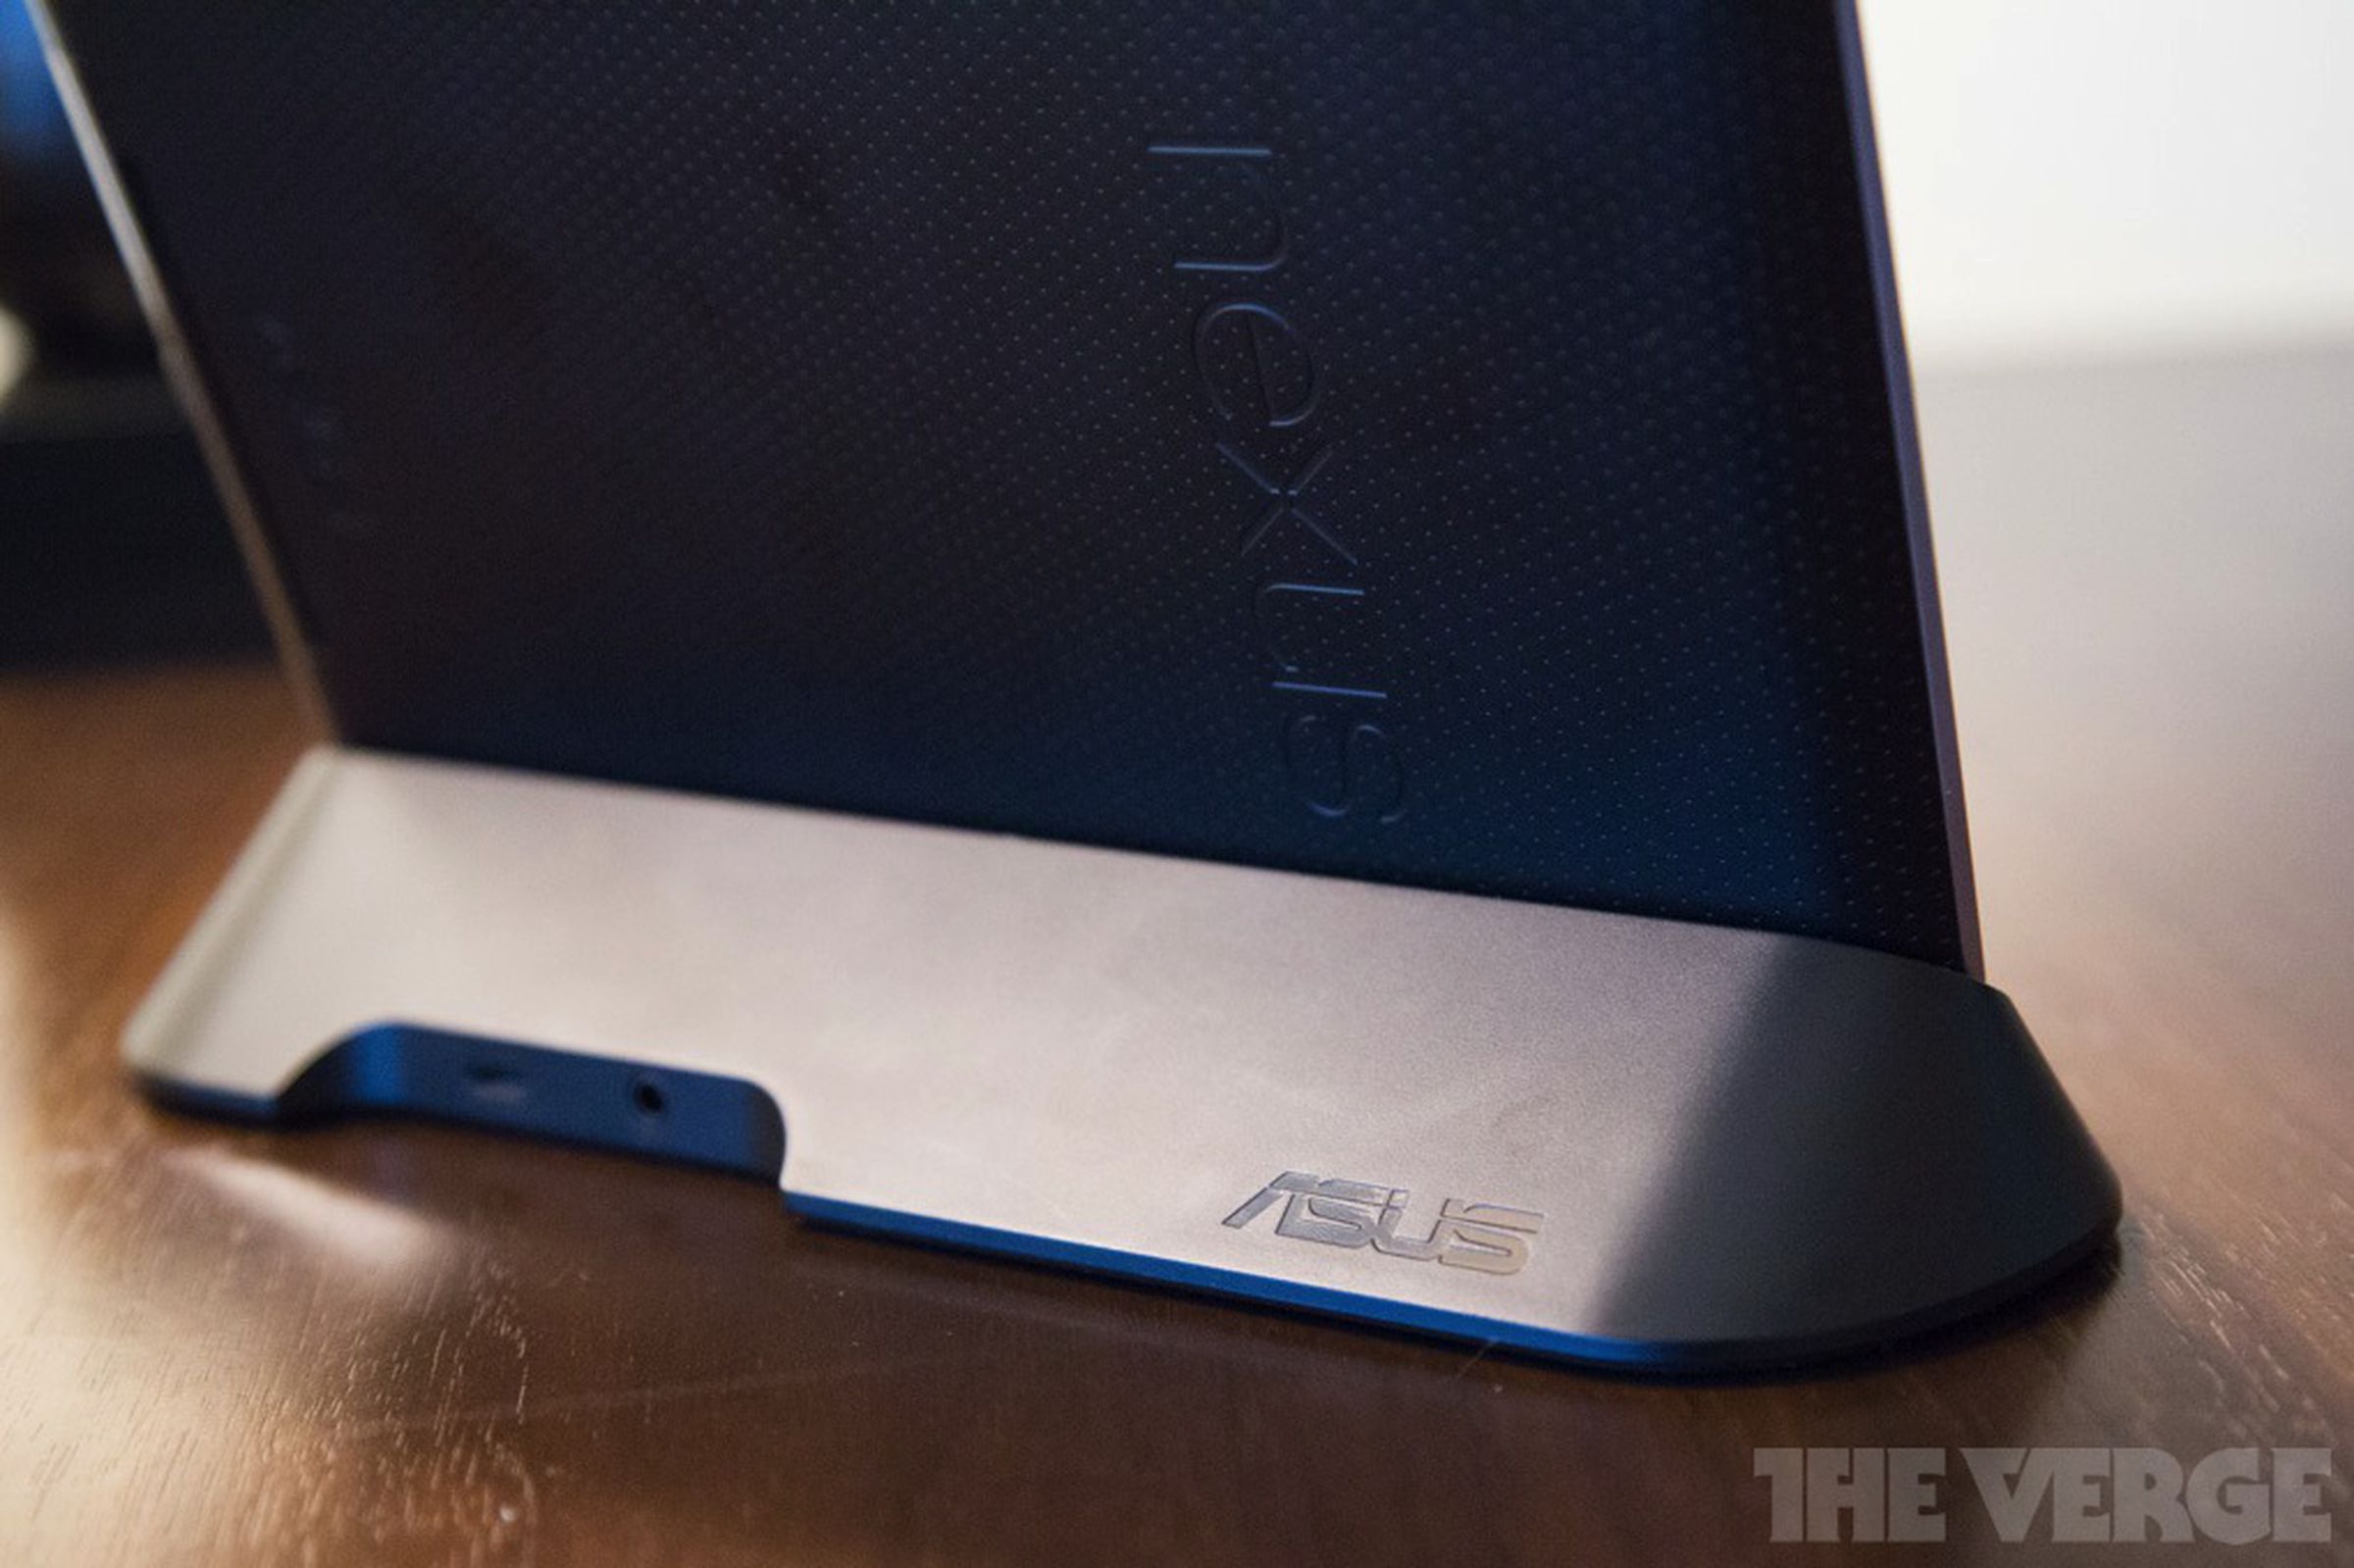 Asus Nexus 7 dock hands-on photos